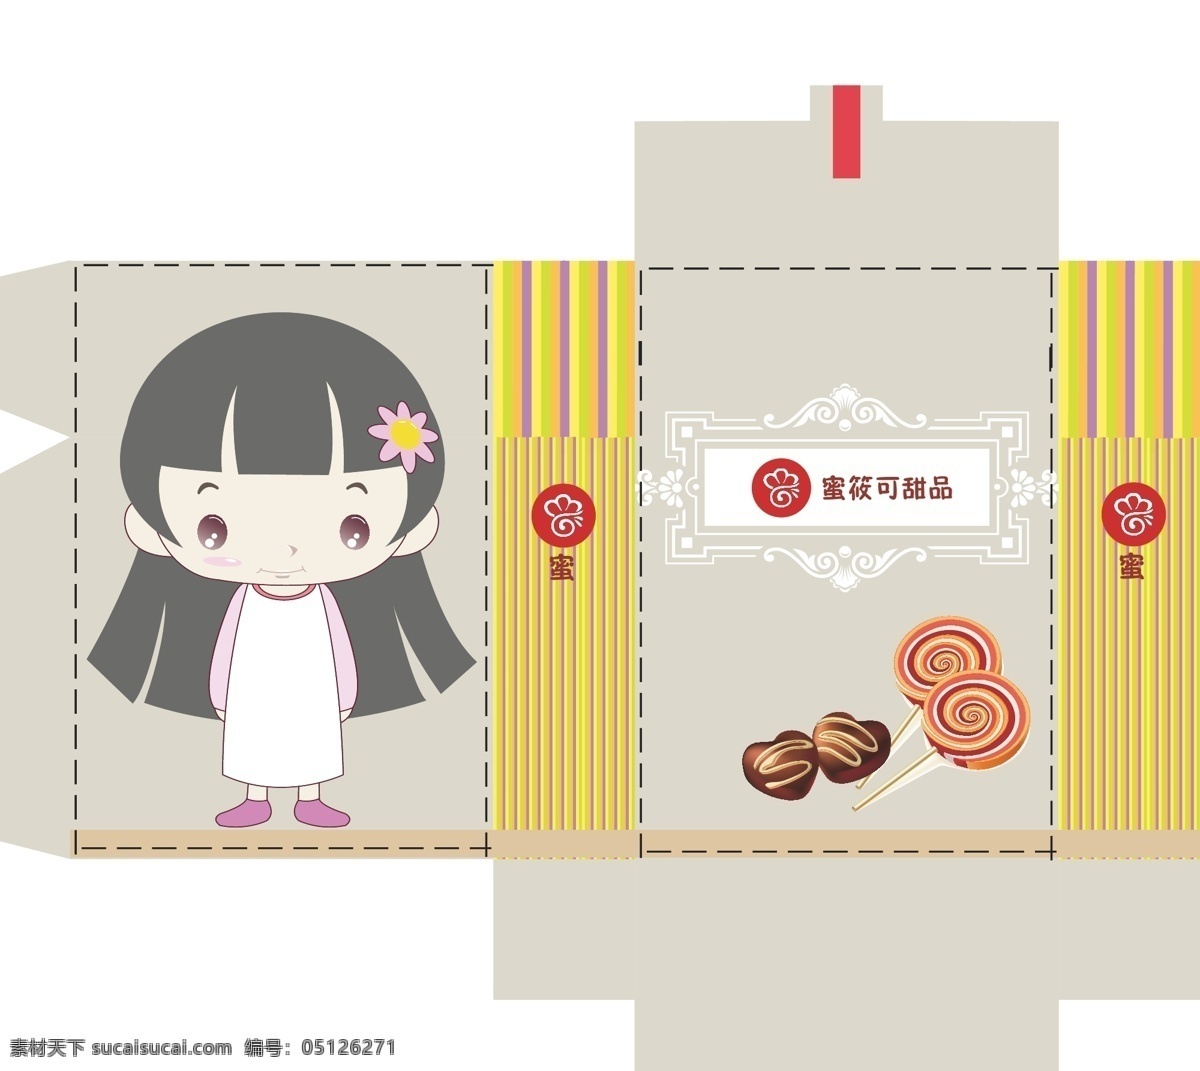 糖果 包装袋 棒棒糖 包装设计 盒型的设计 巧克力 糖果包装袋 韩国小女孩 颜色的搭配 矢量 矢量图